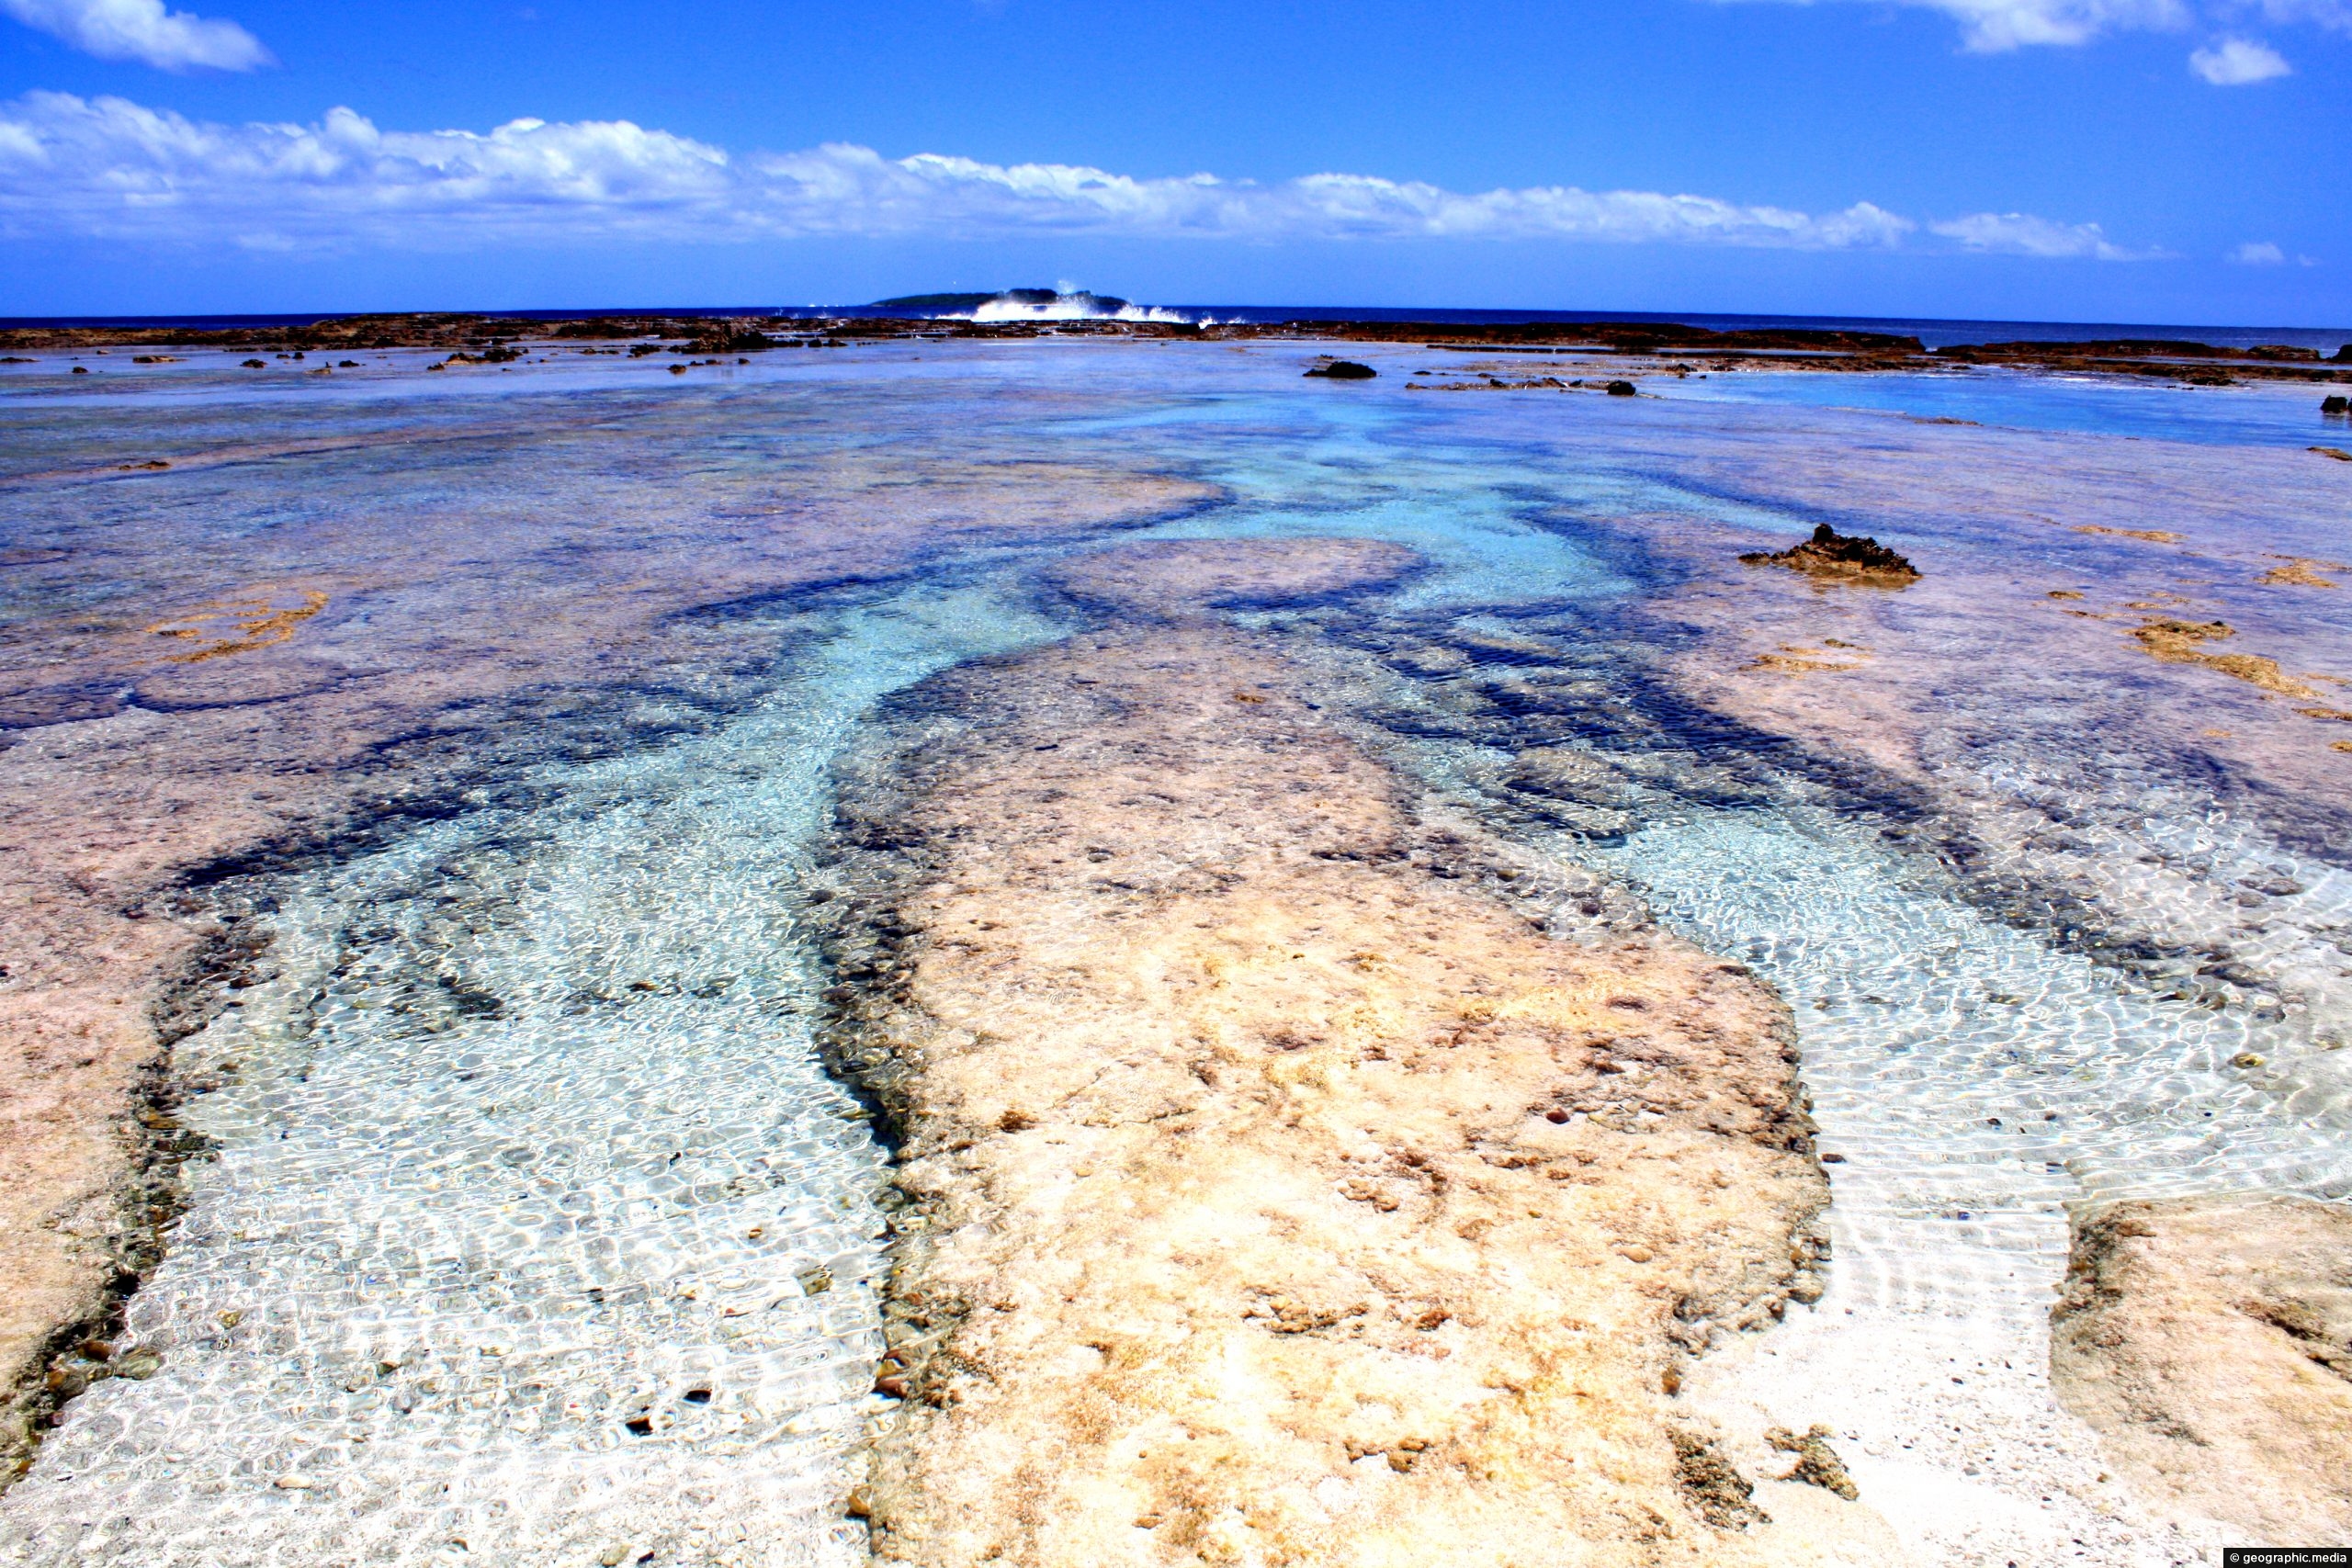 Eua Island Coral Reef in Tonga